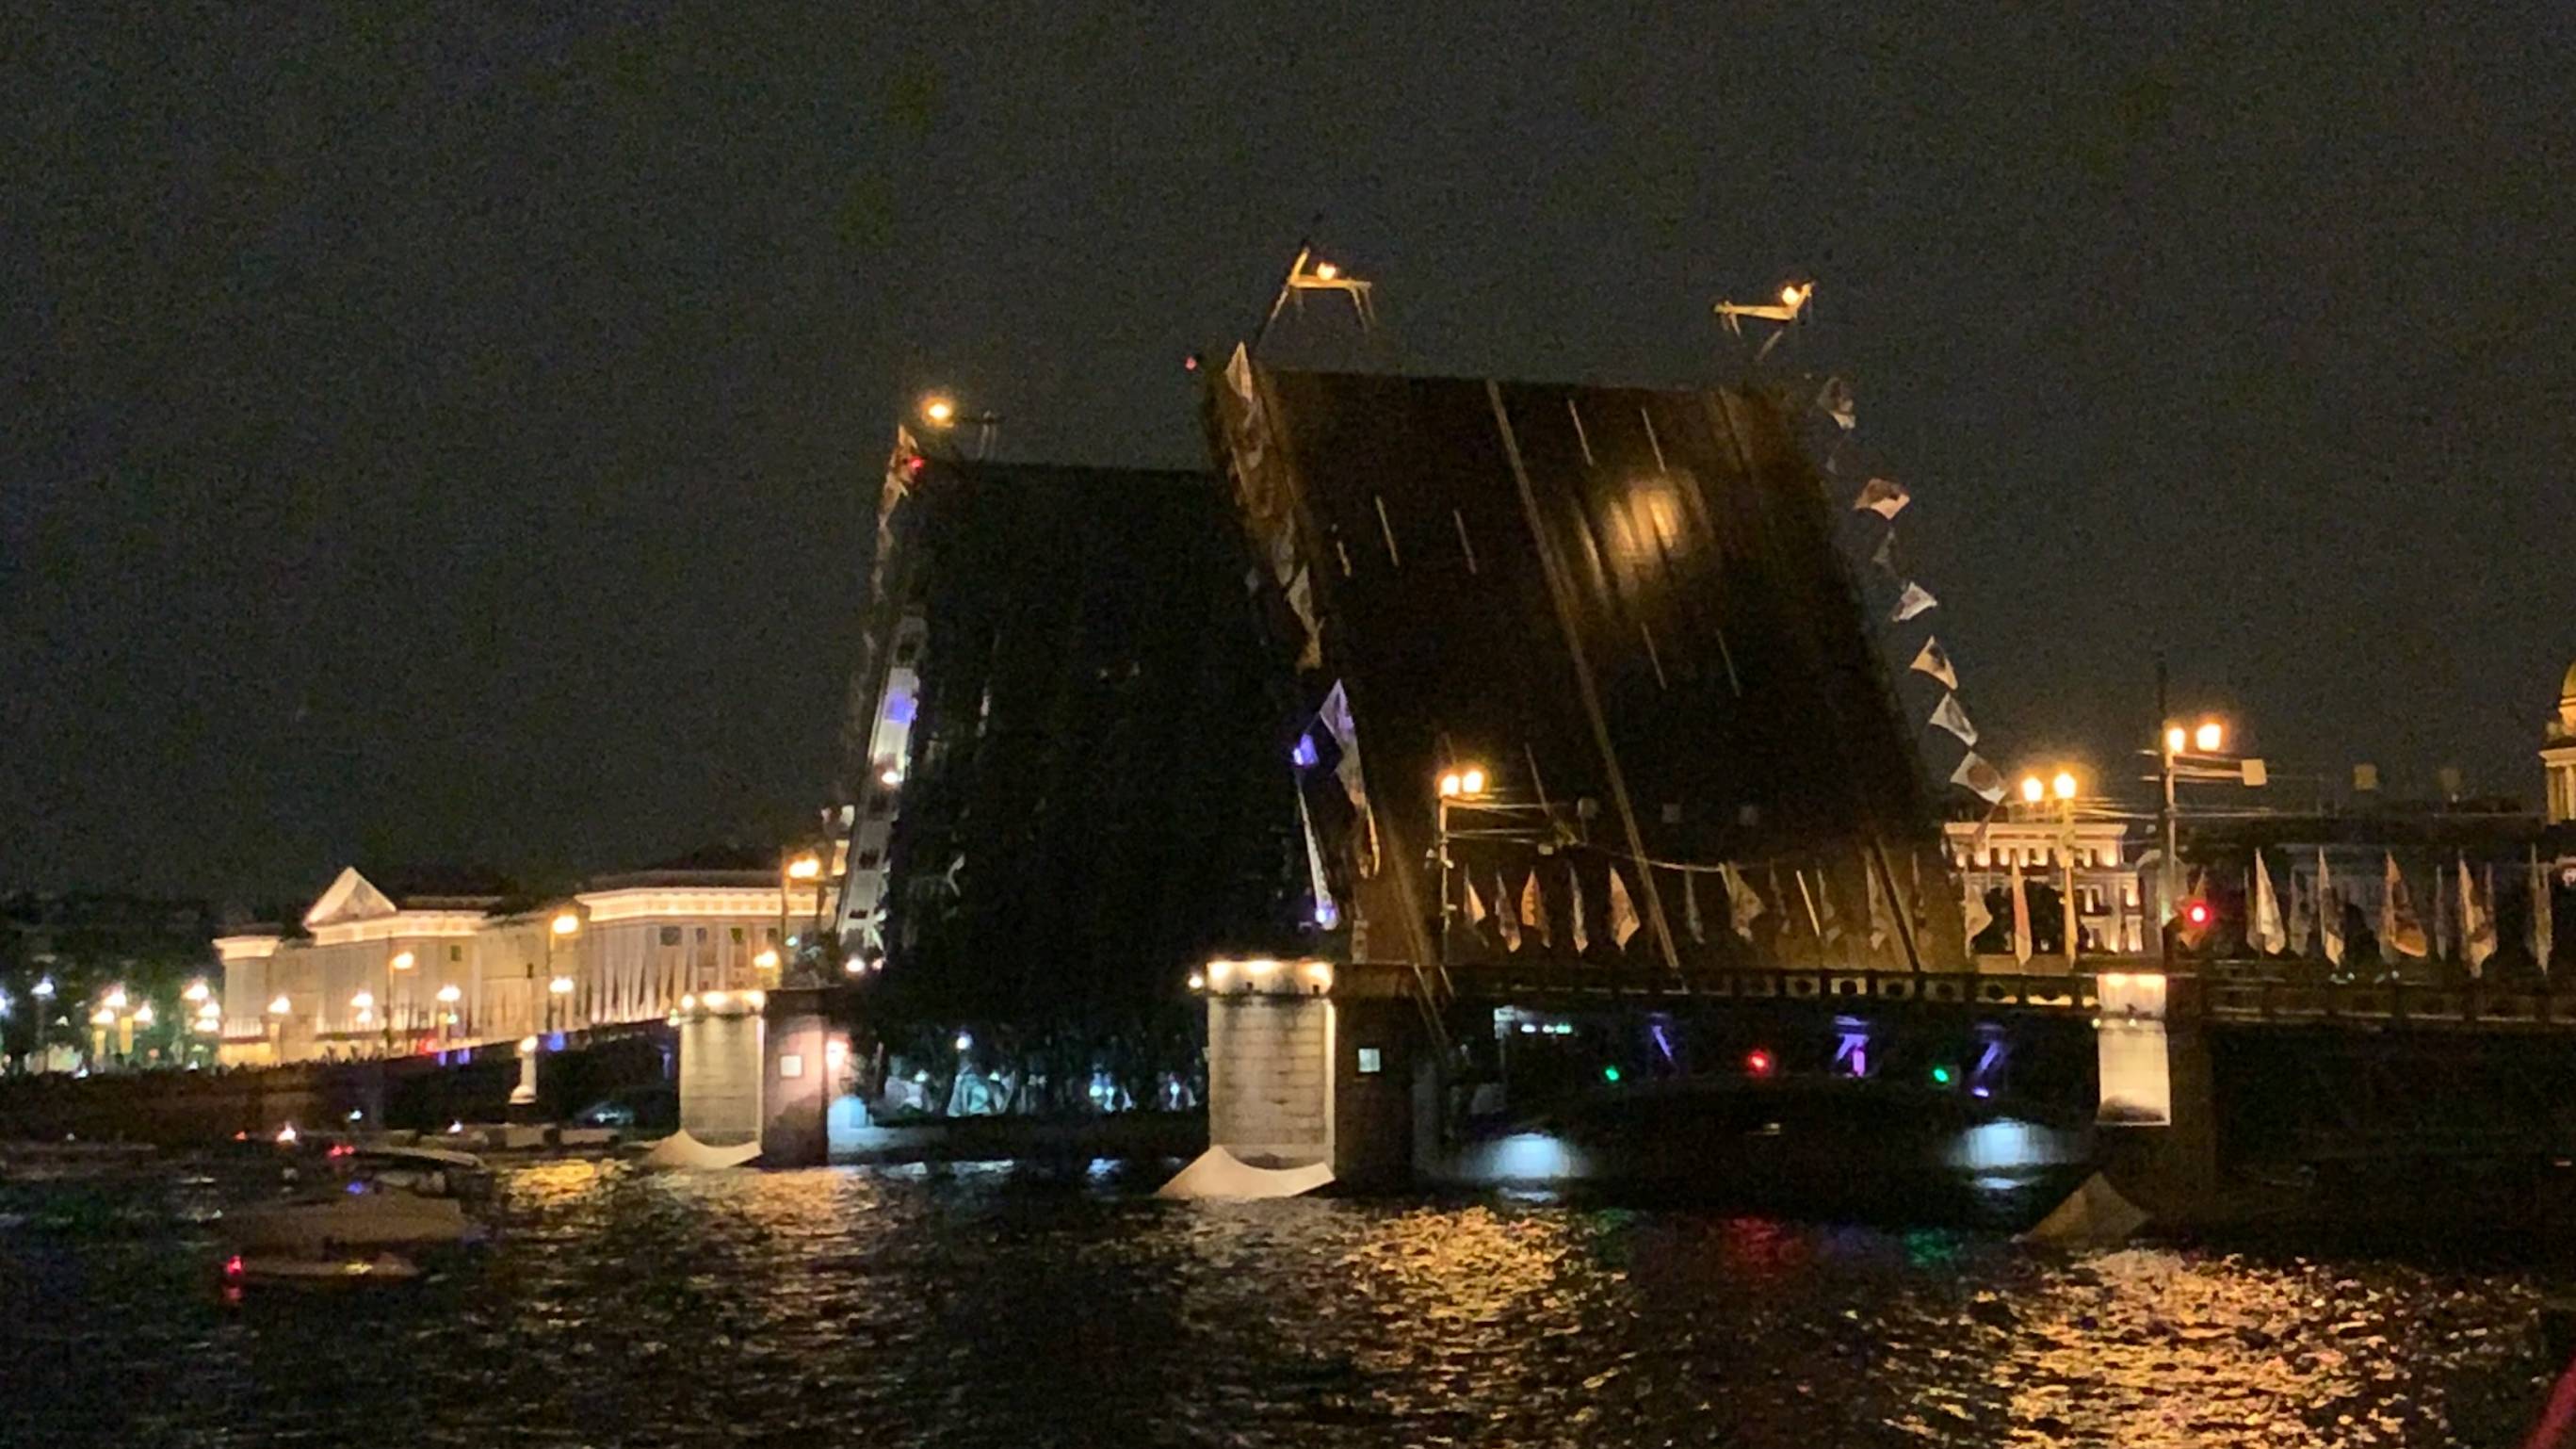 Разведение Дворцового моста. Санкт-Петербург #питер #мосты